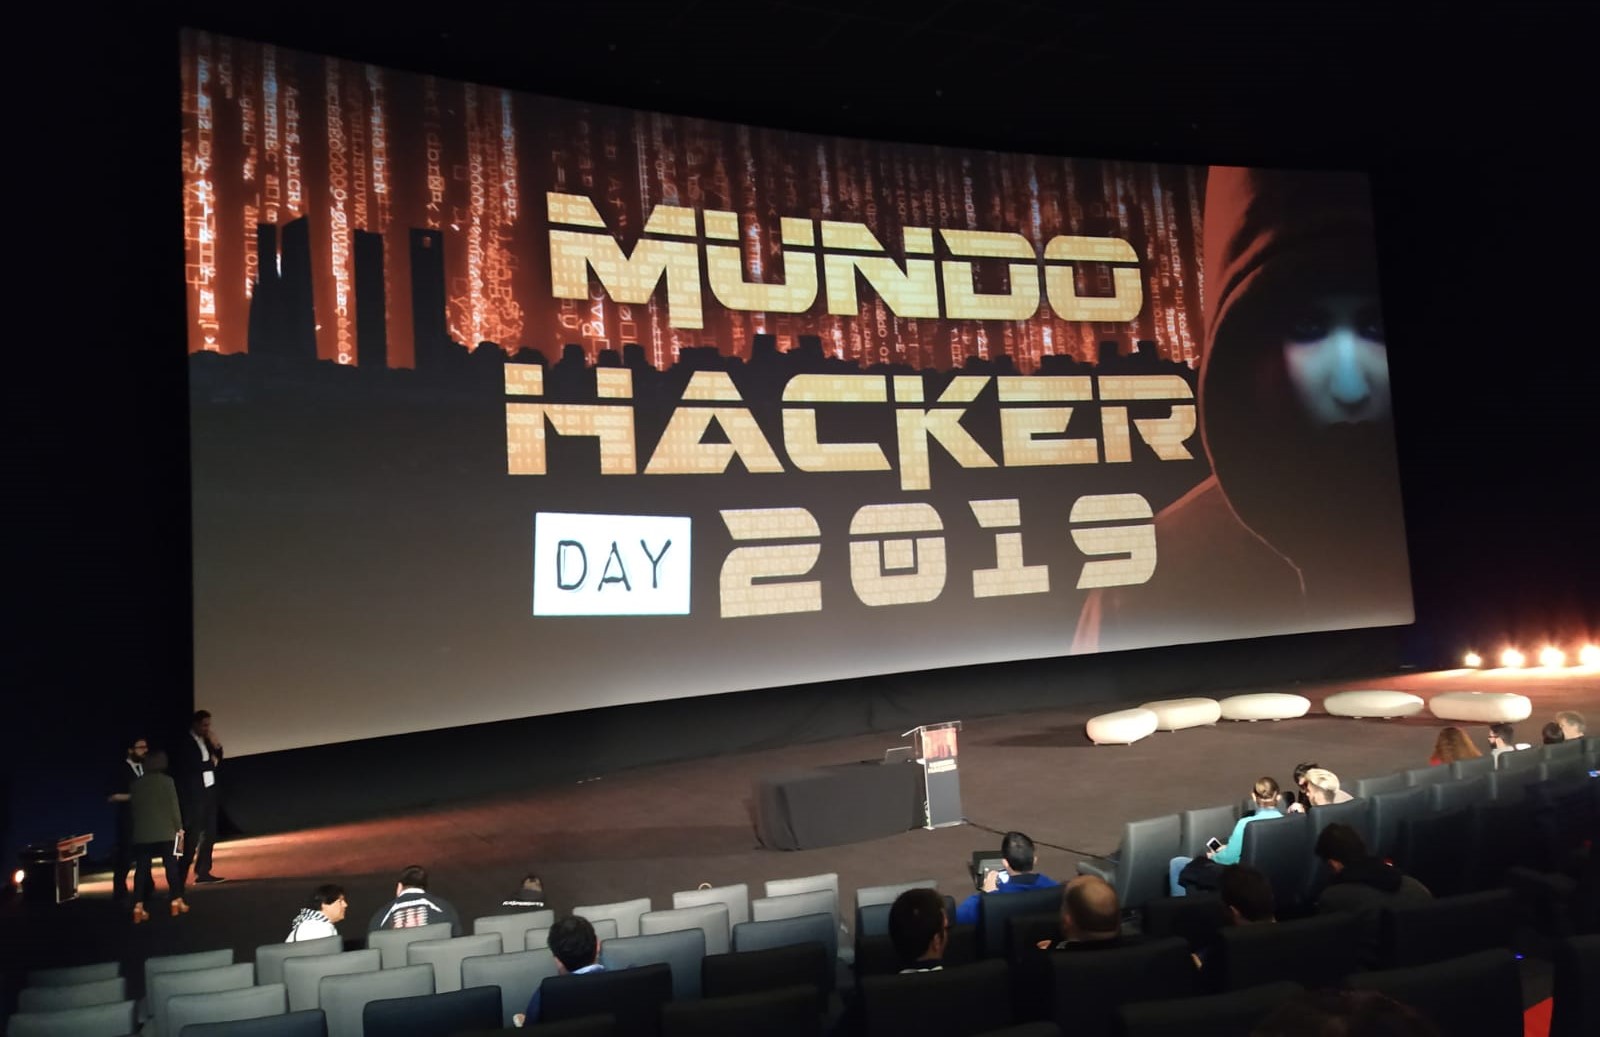 Dinahosting patrocina Mundo Hacker Day, evento de ciberseguridad